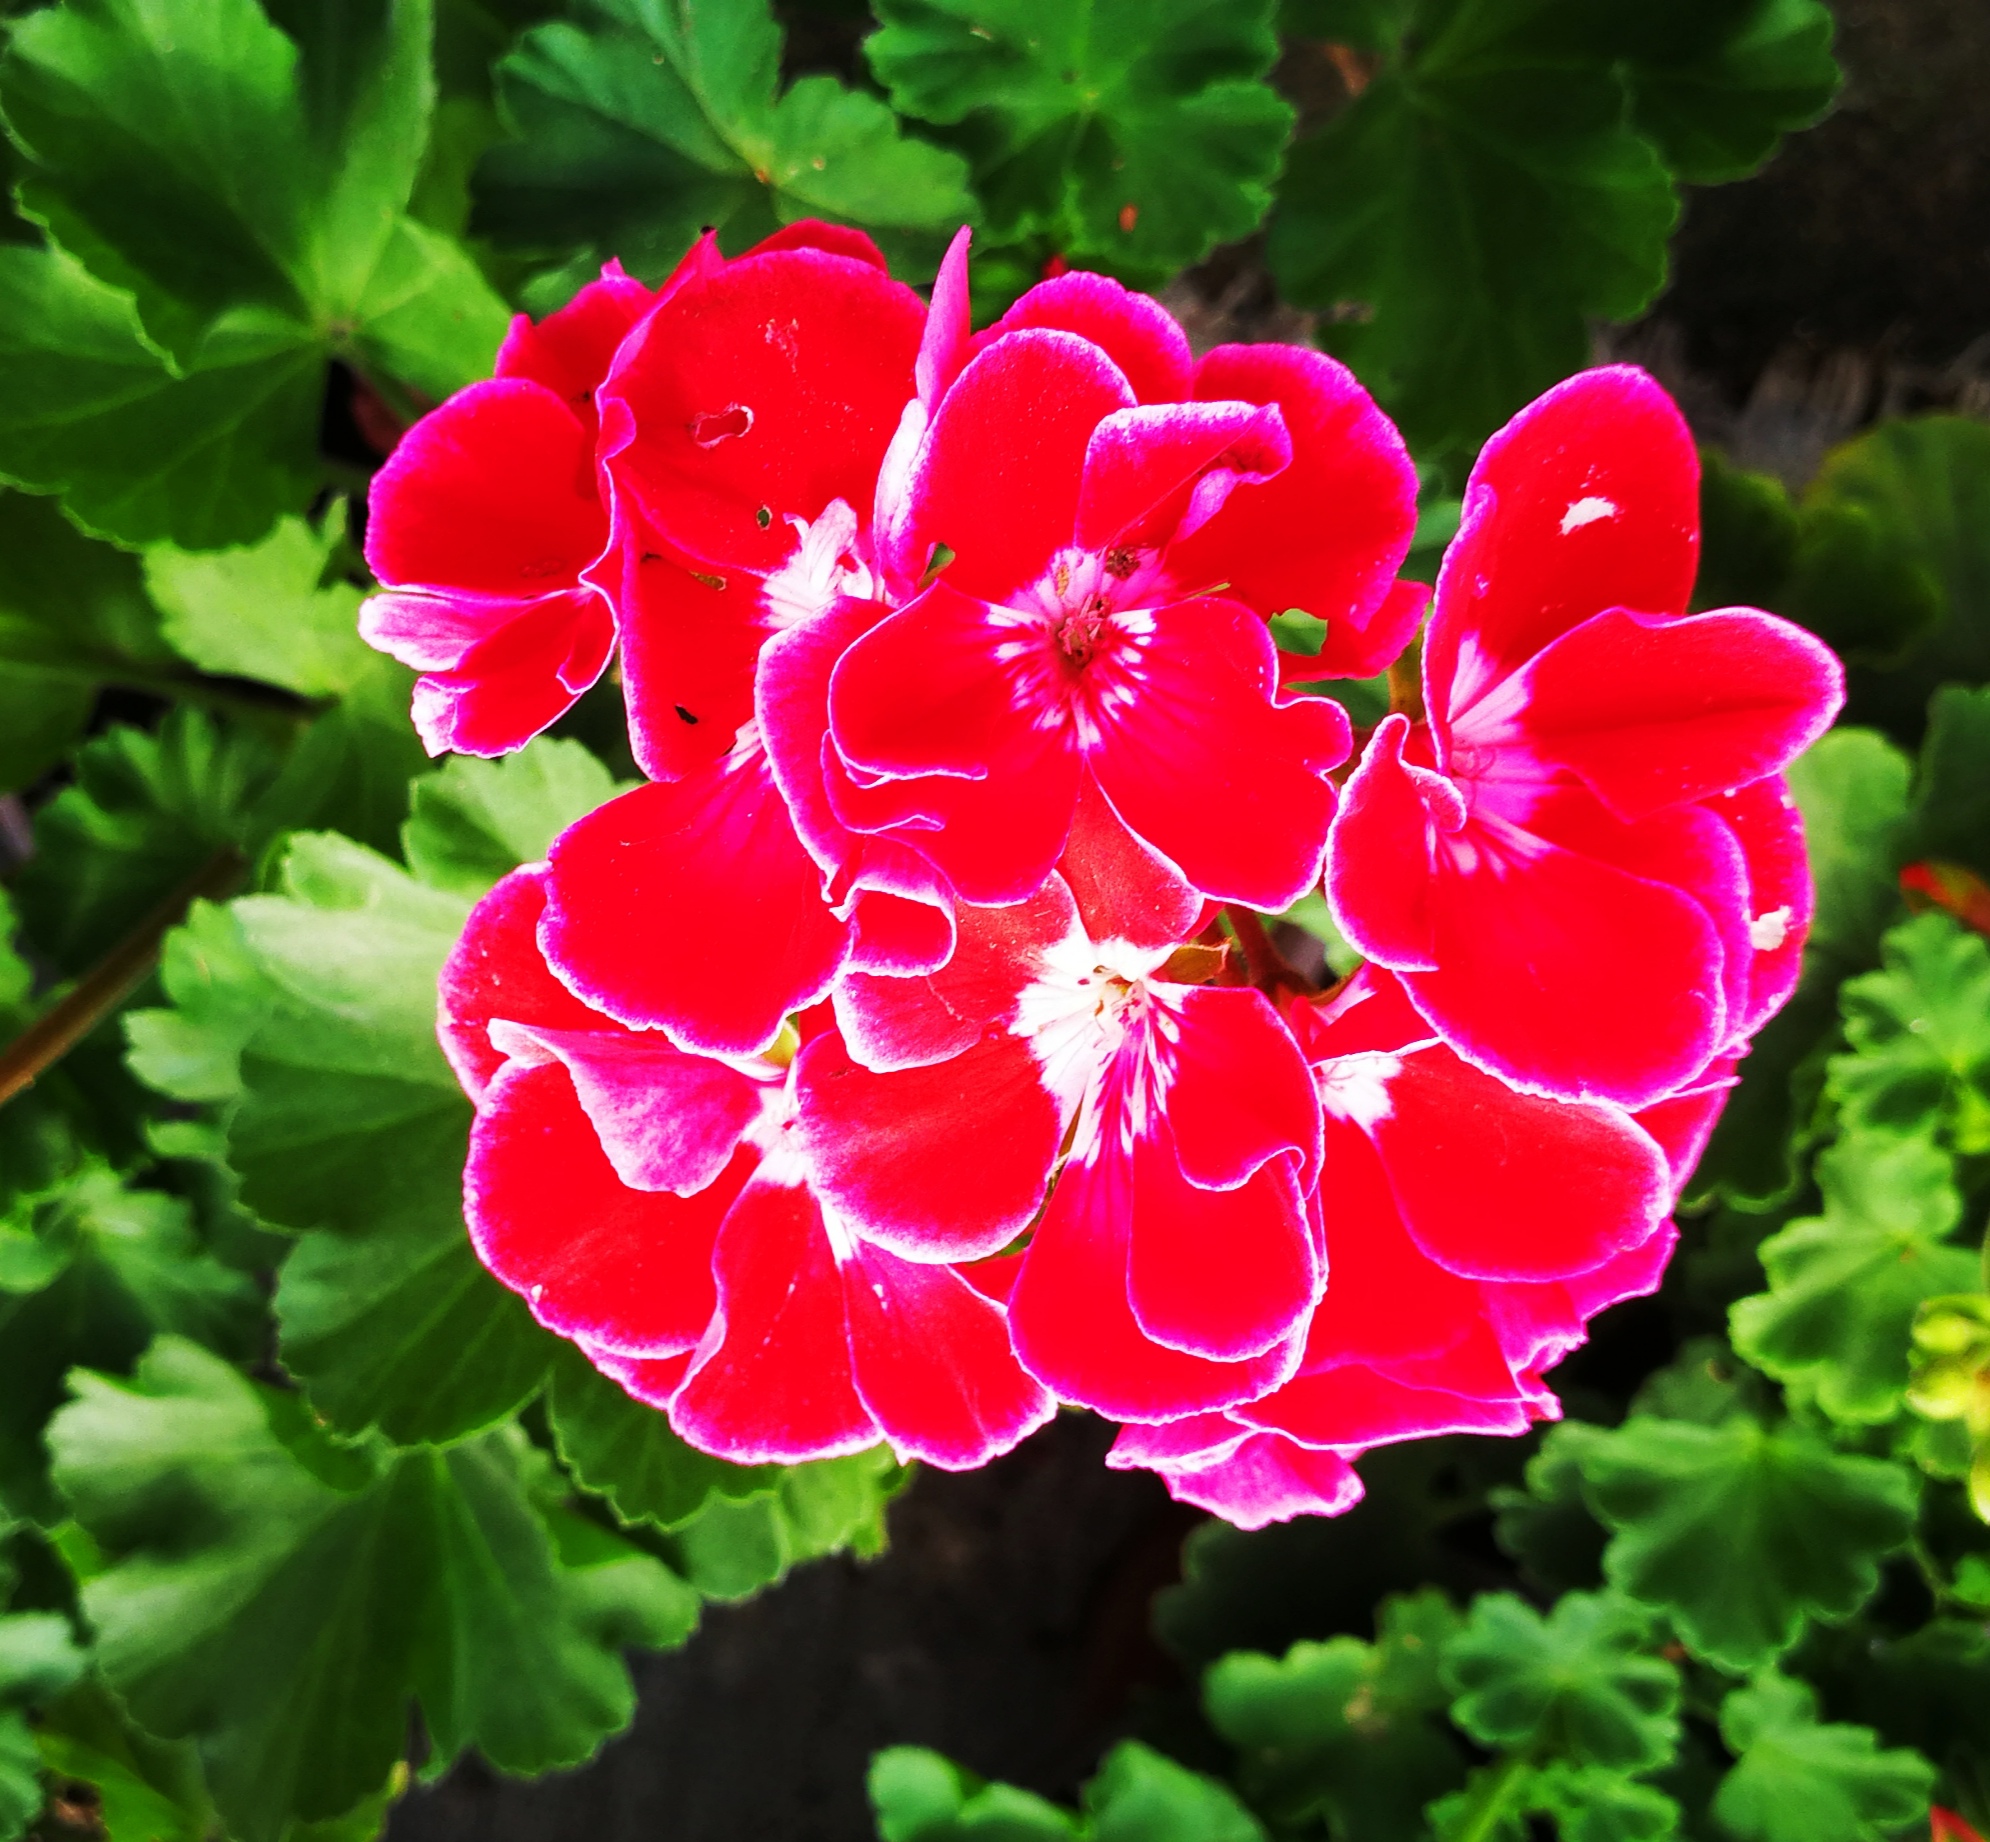 rose geranium 香葉(玫瑰) 天竺葵 Pelargonium graveolens 天竺葵屬 | Flickr